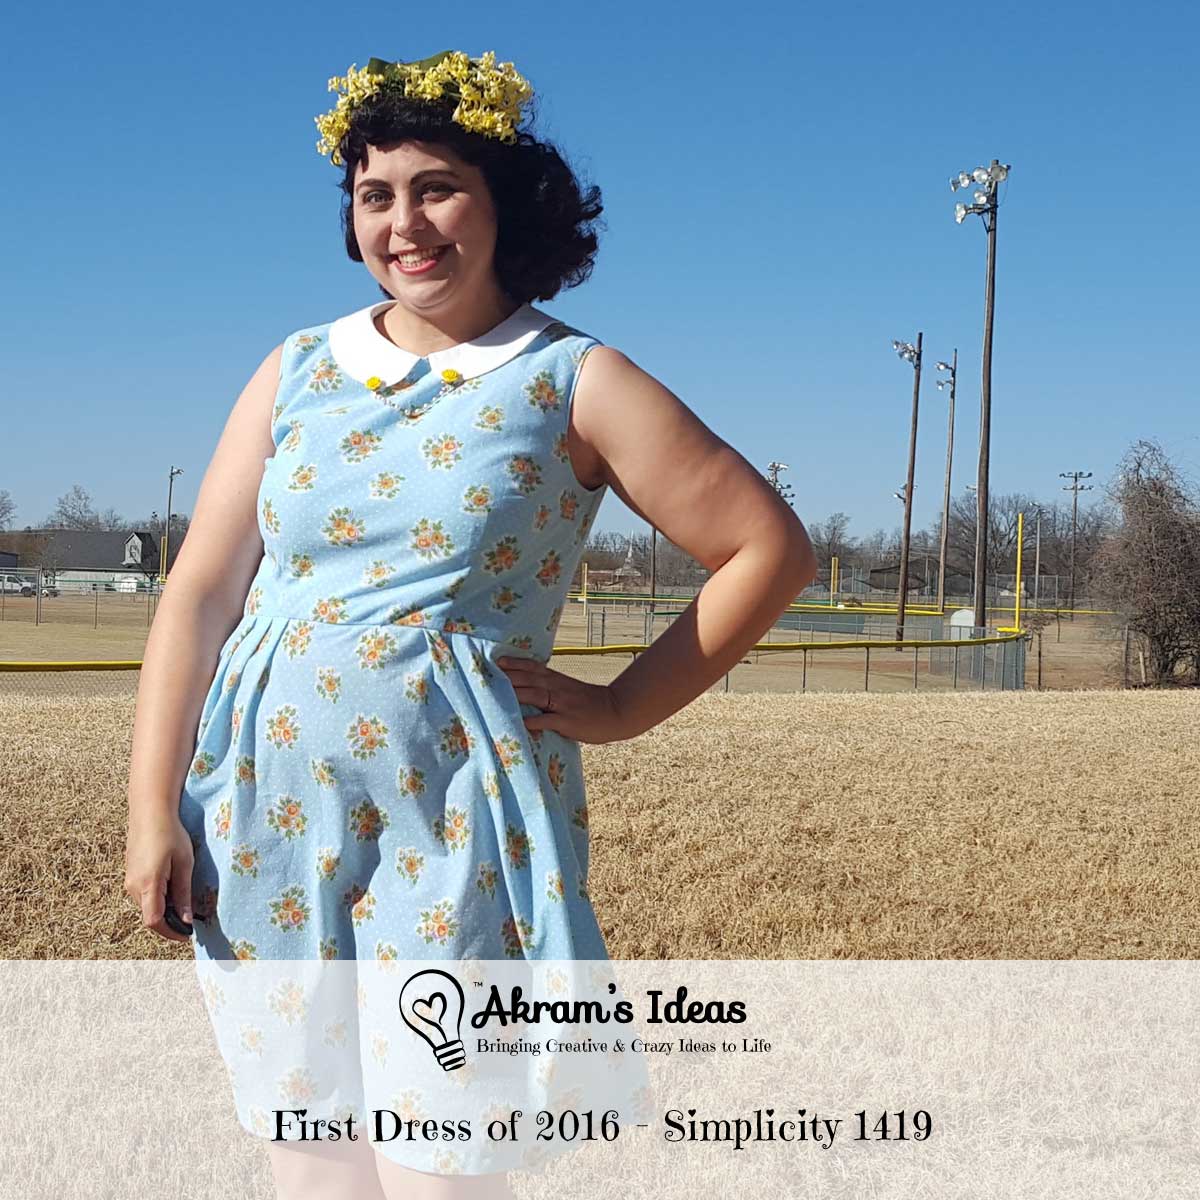 Akram's Ideas : First Dress of 2016 - Simplicity 1419